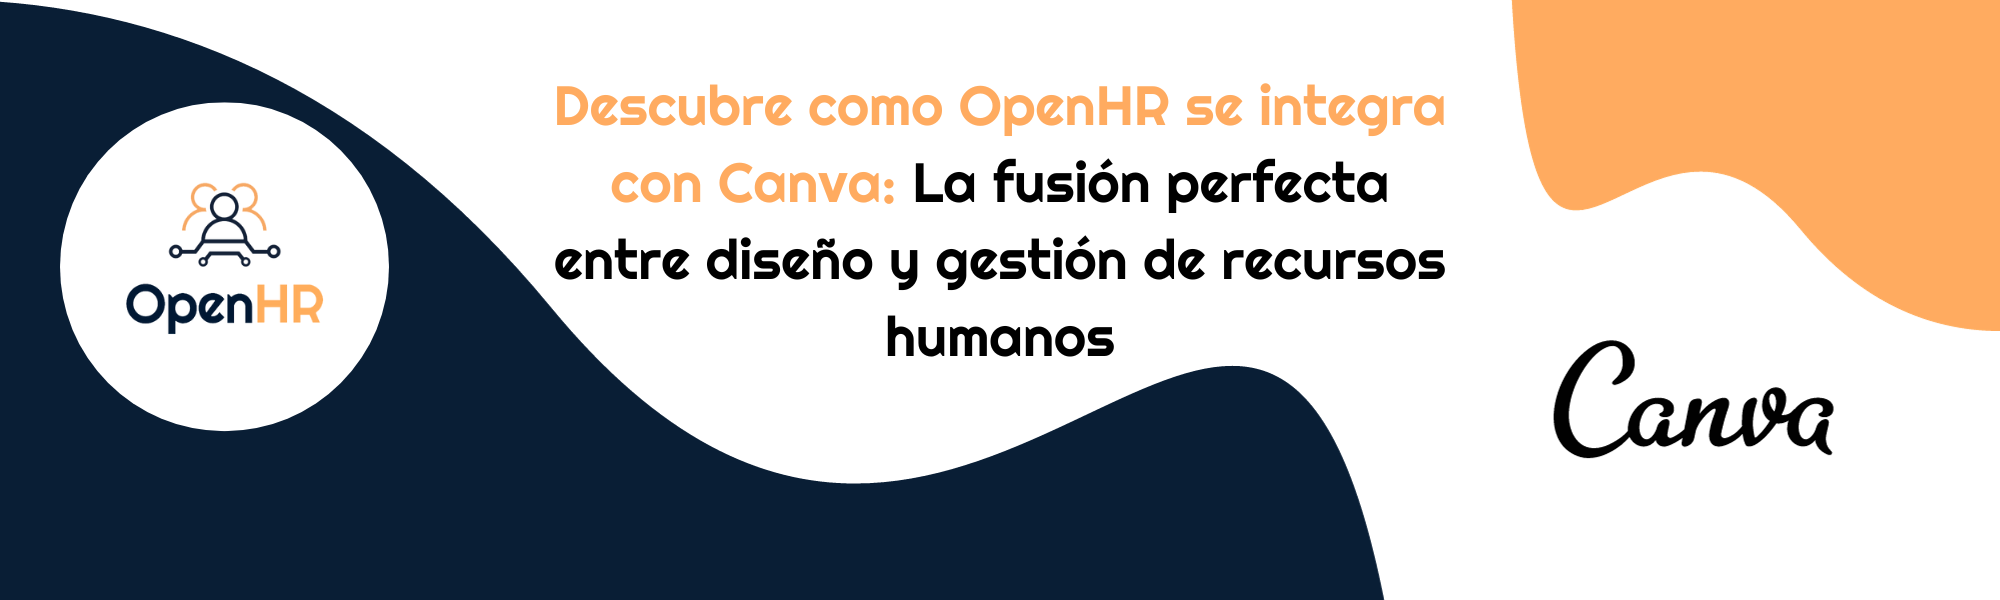 OpenHR se integra con Canva 